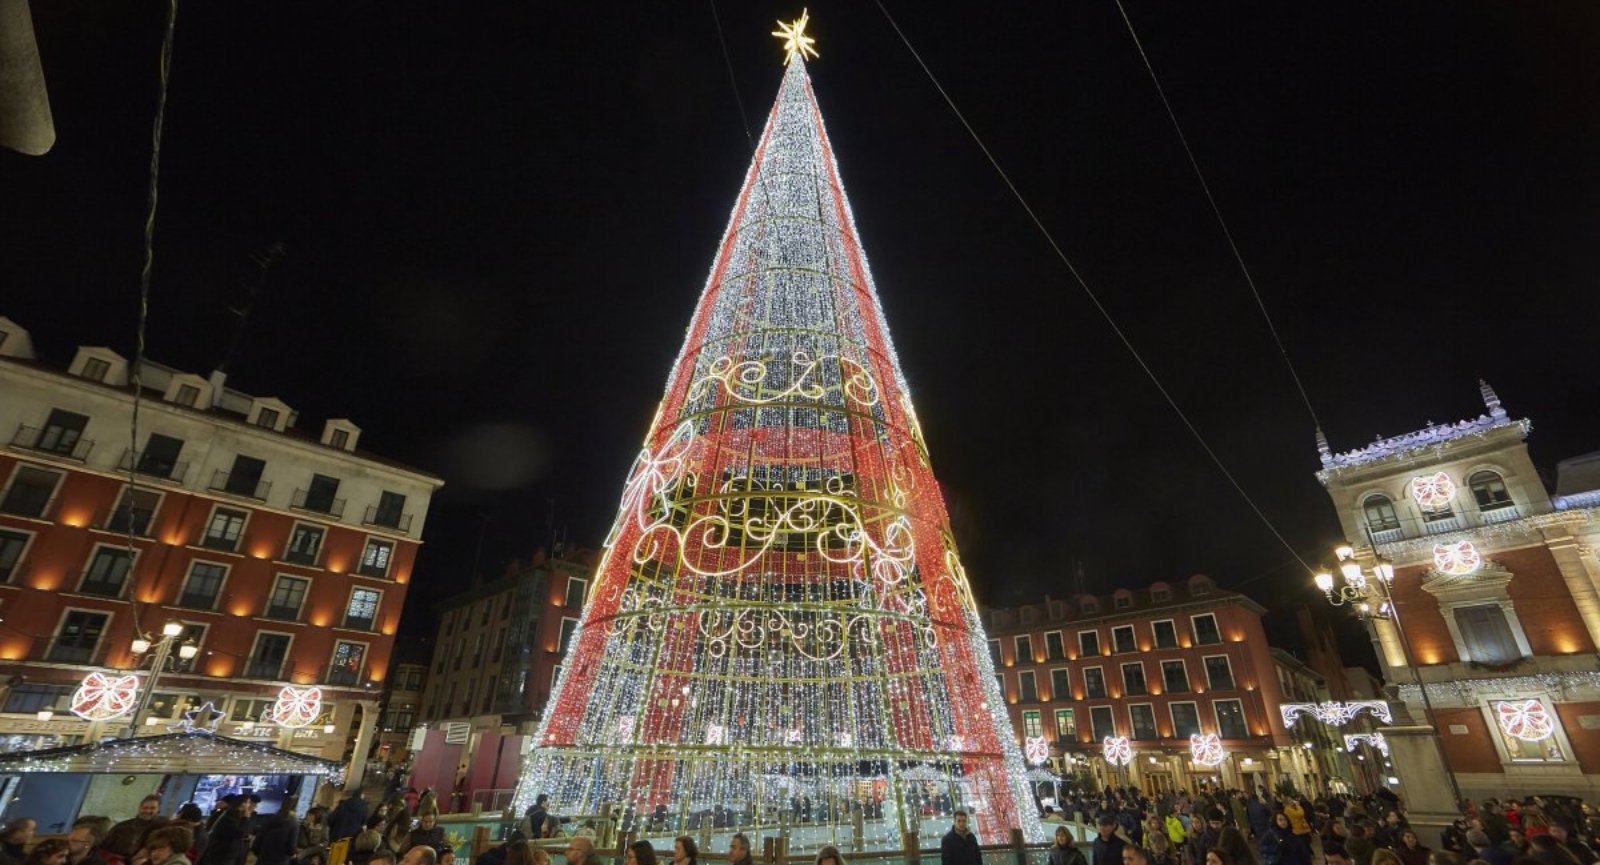 Luces de Navidad de Valladolid